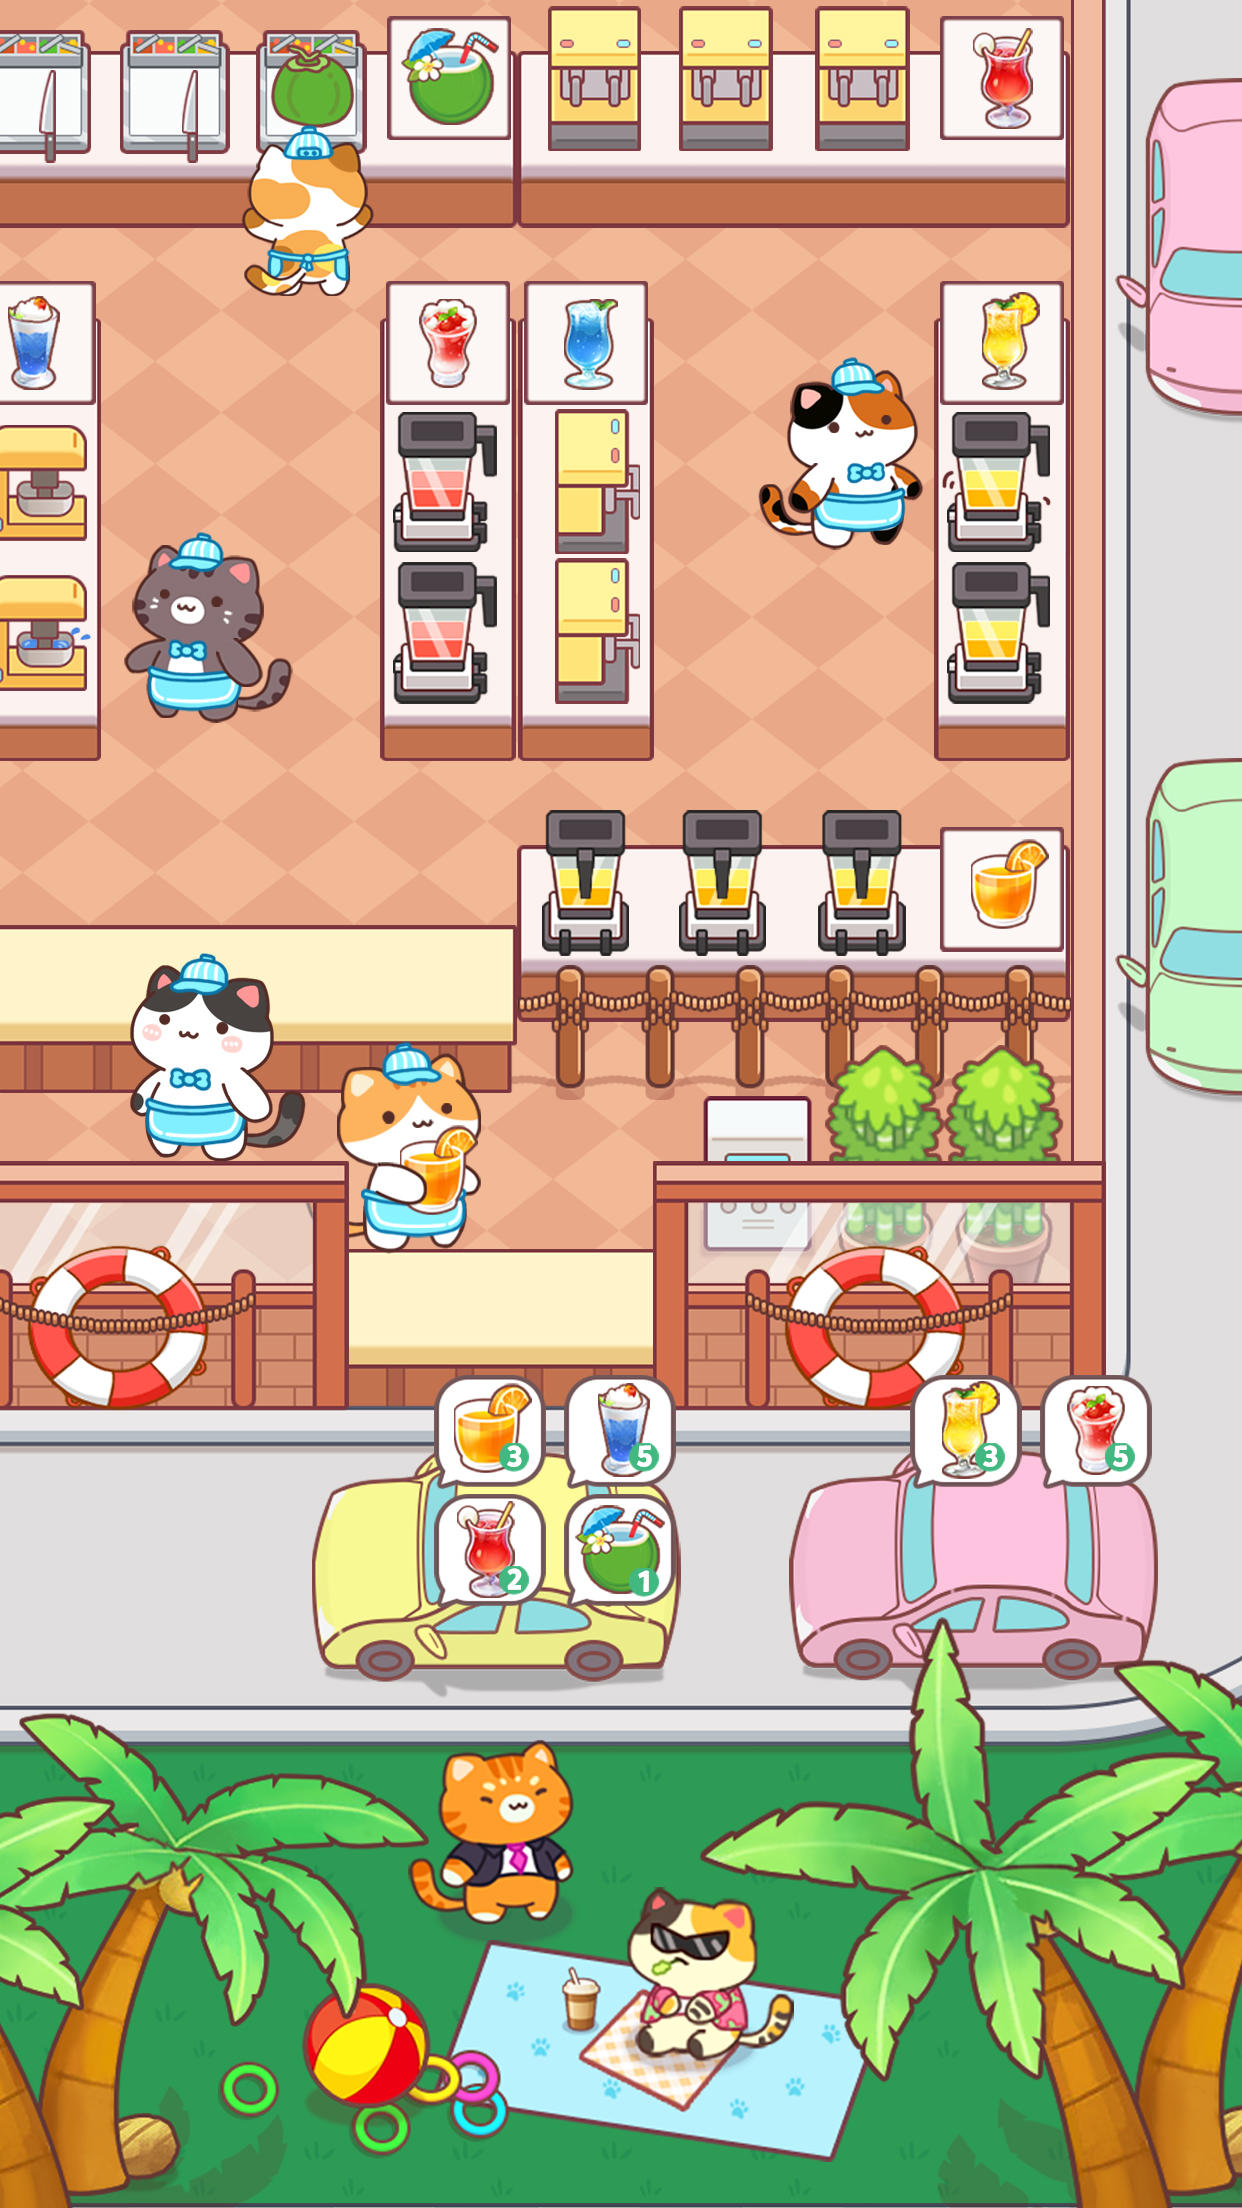 Screenshot 1 of Cat cooking bar - Katze kochen 1.7.16